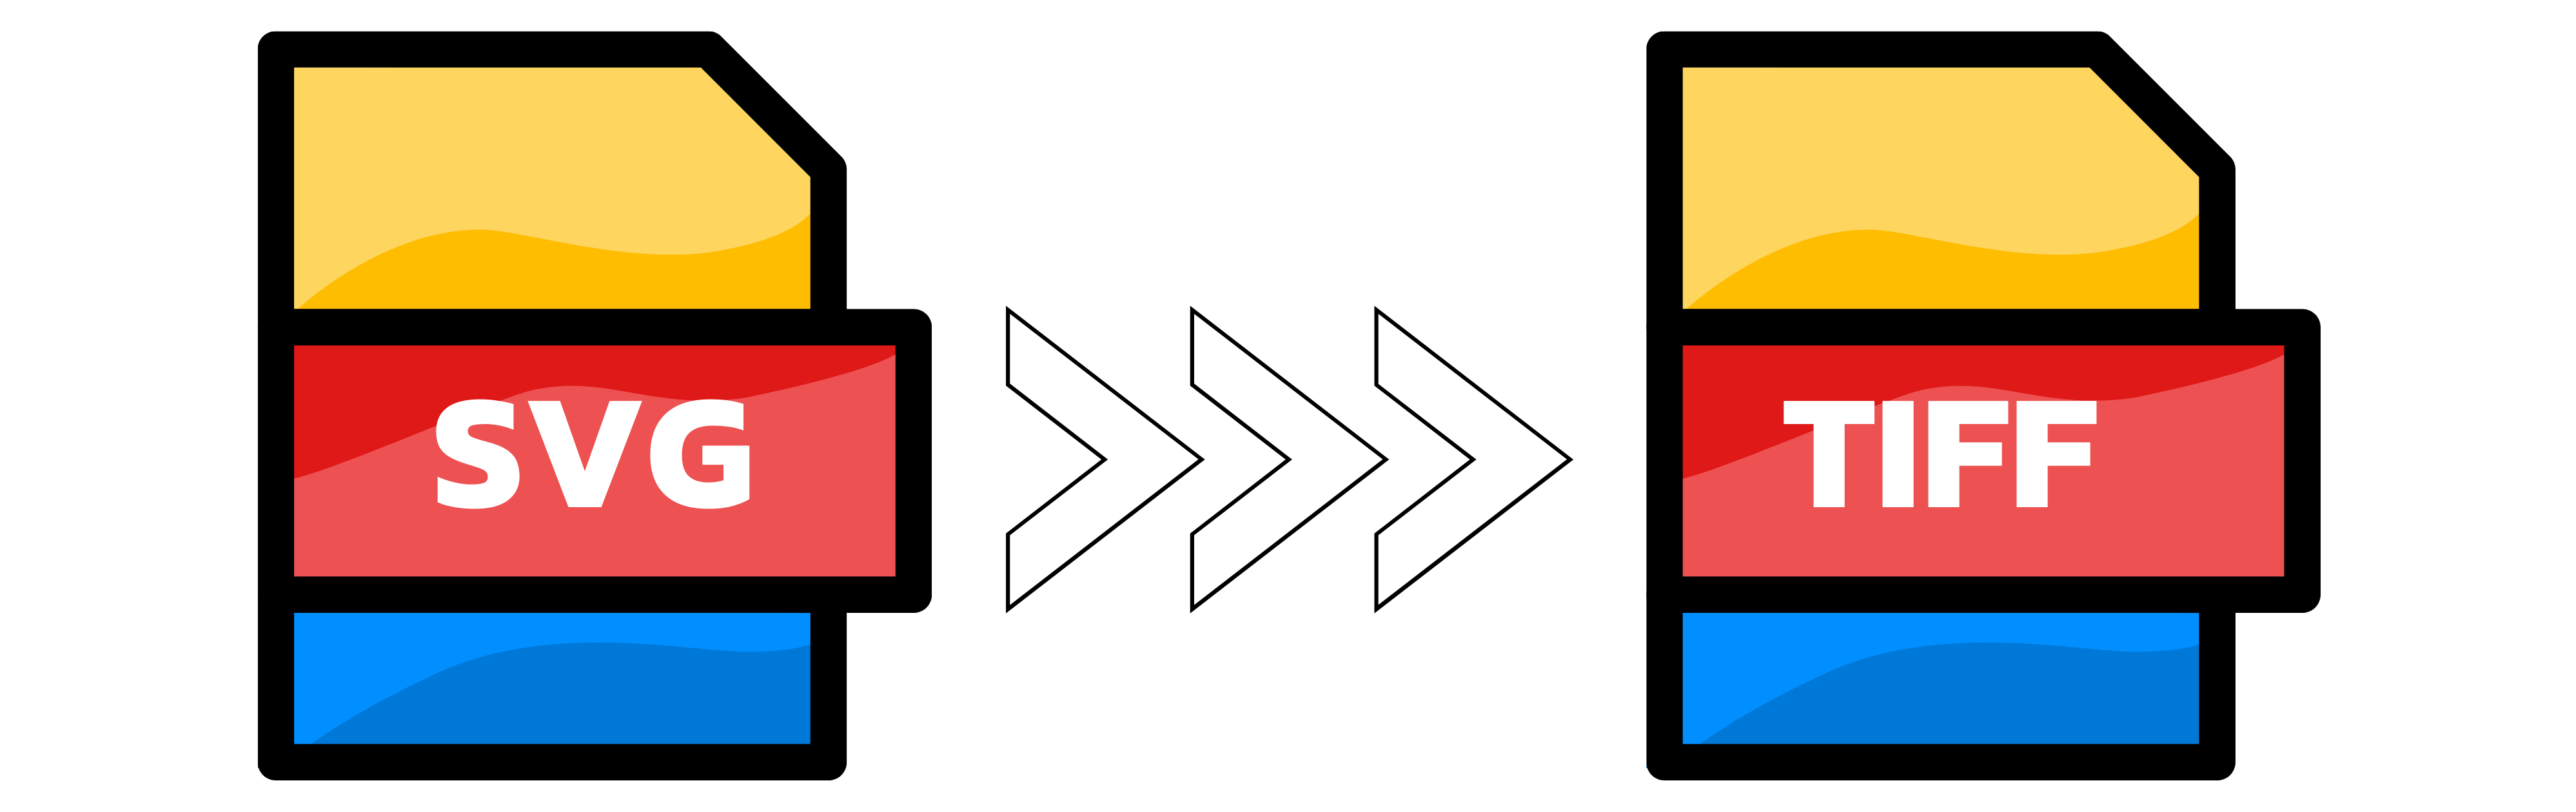 Ilustração: Conversão de SVG para TIFF